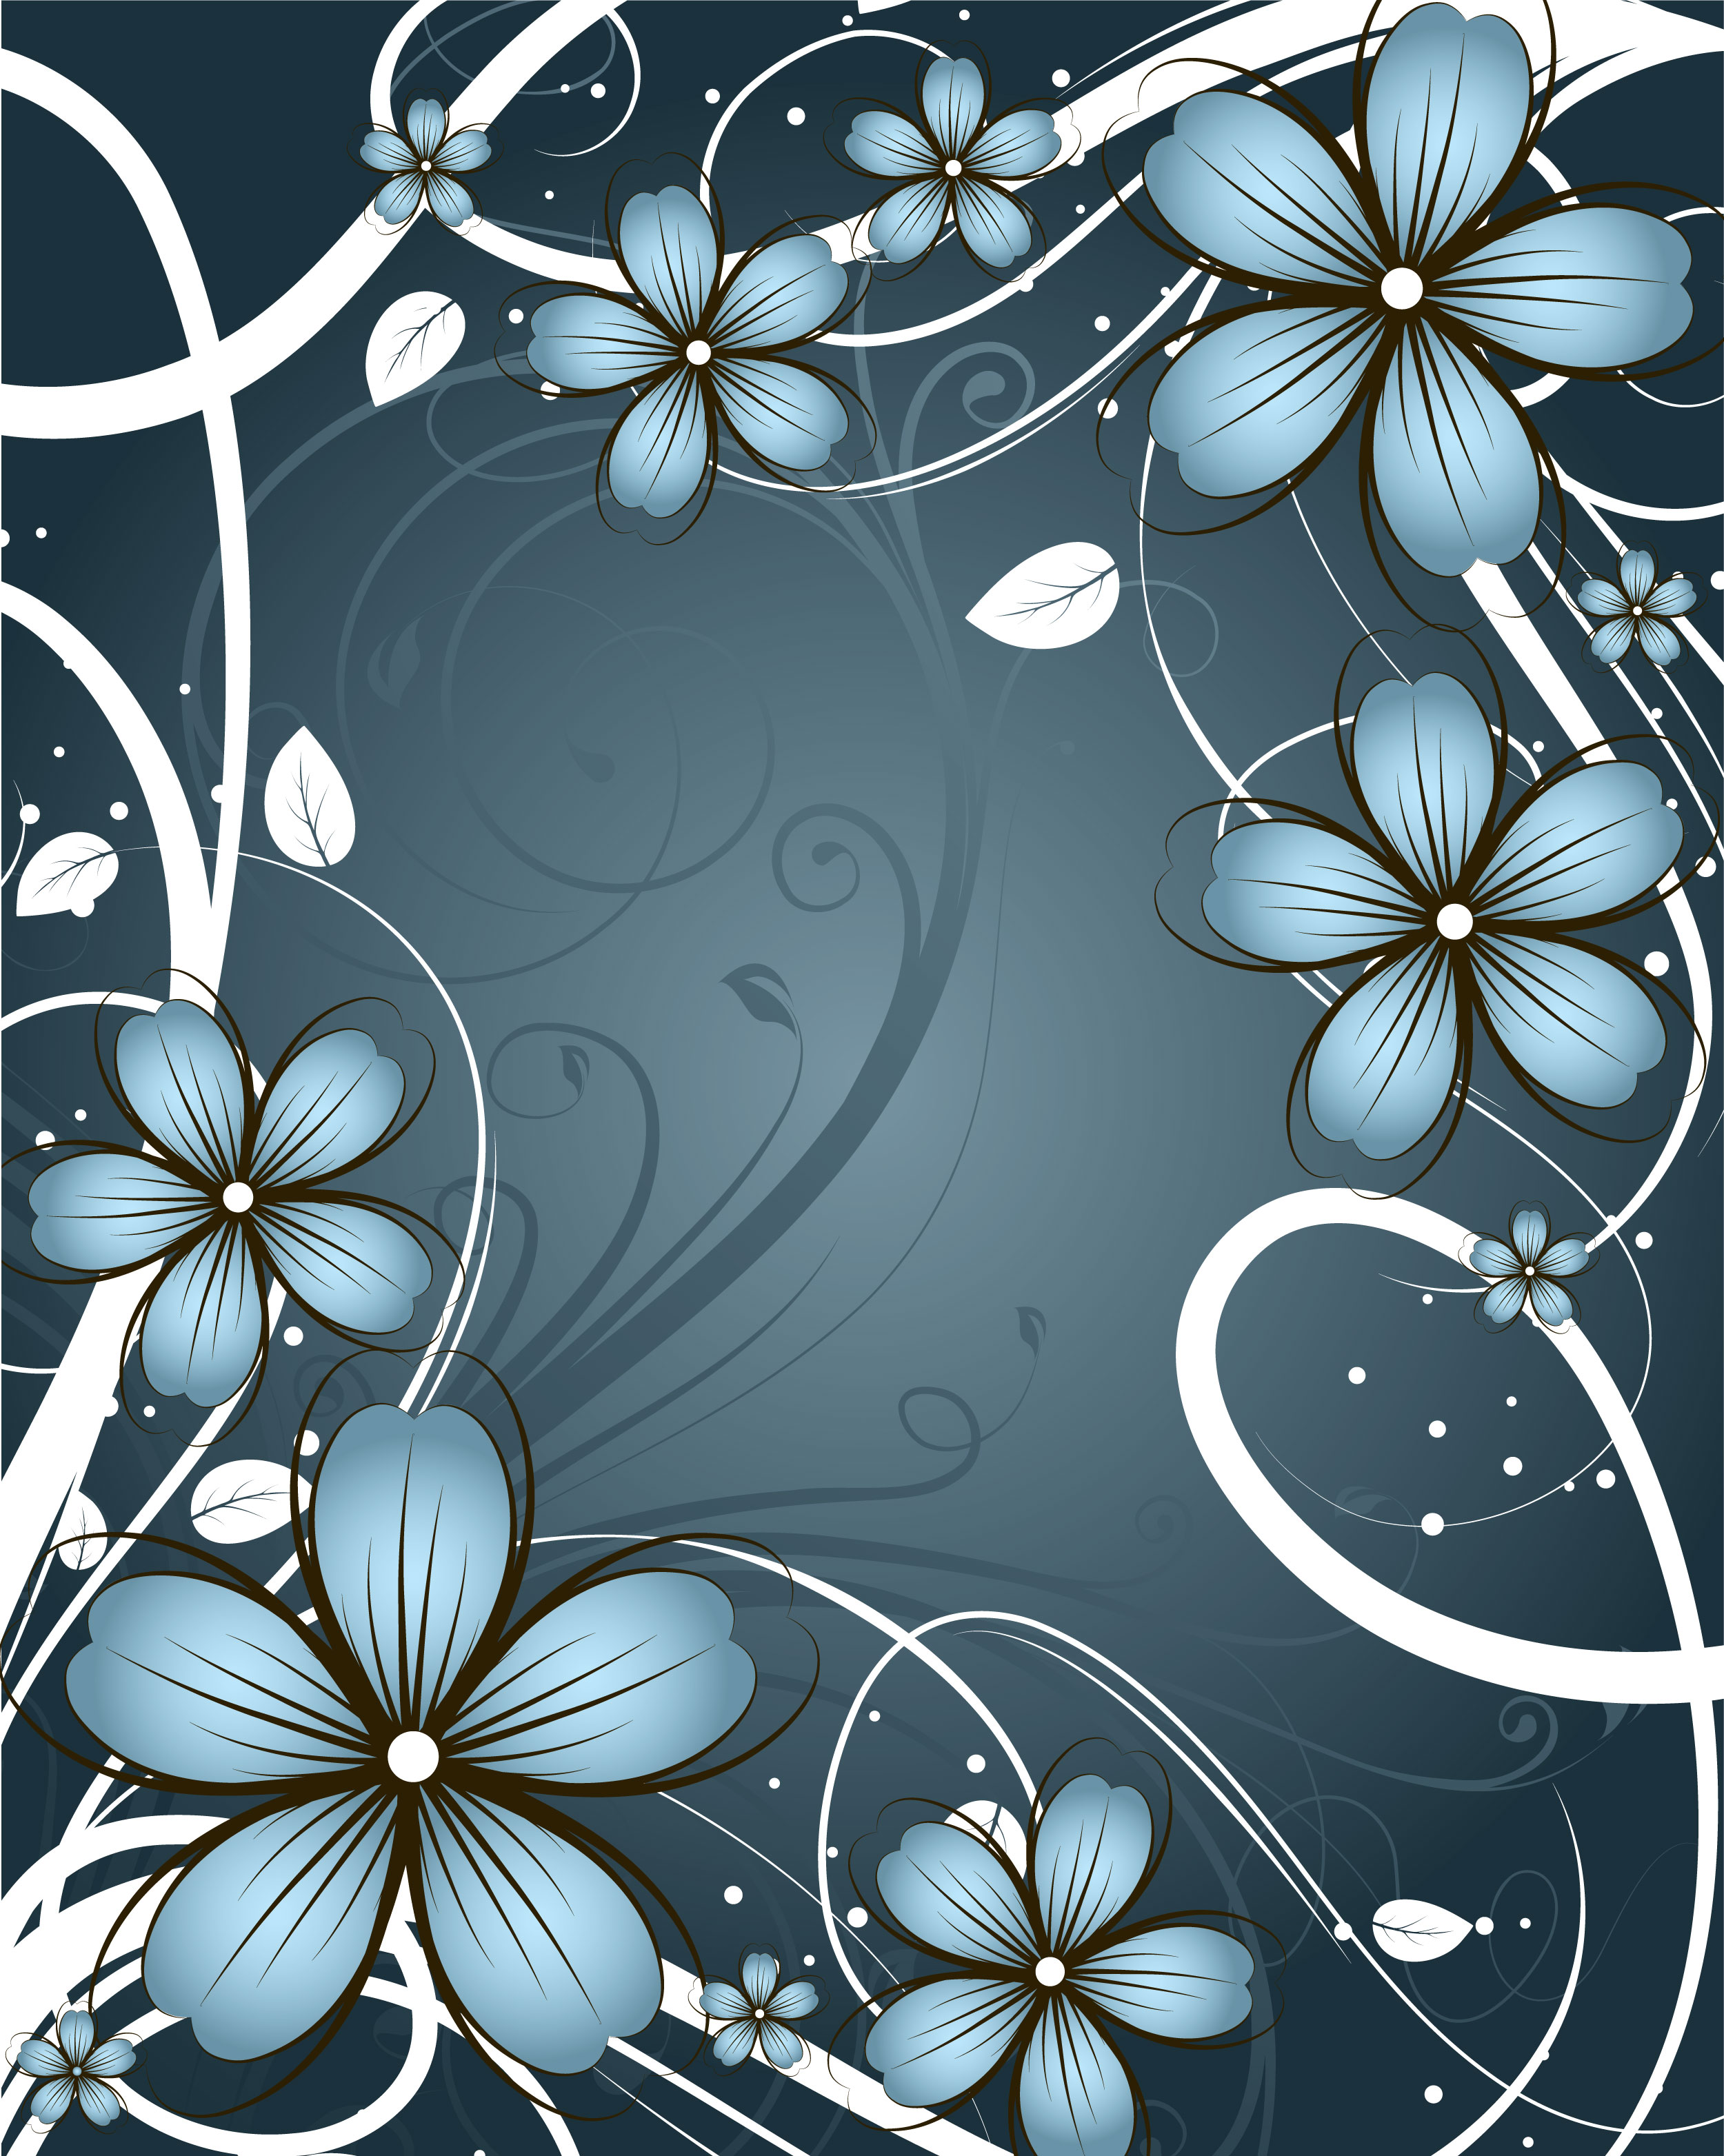 花のイラスト フリー素材 壁紙 背景no 287 青 白ライン 葉